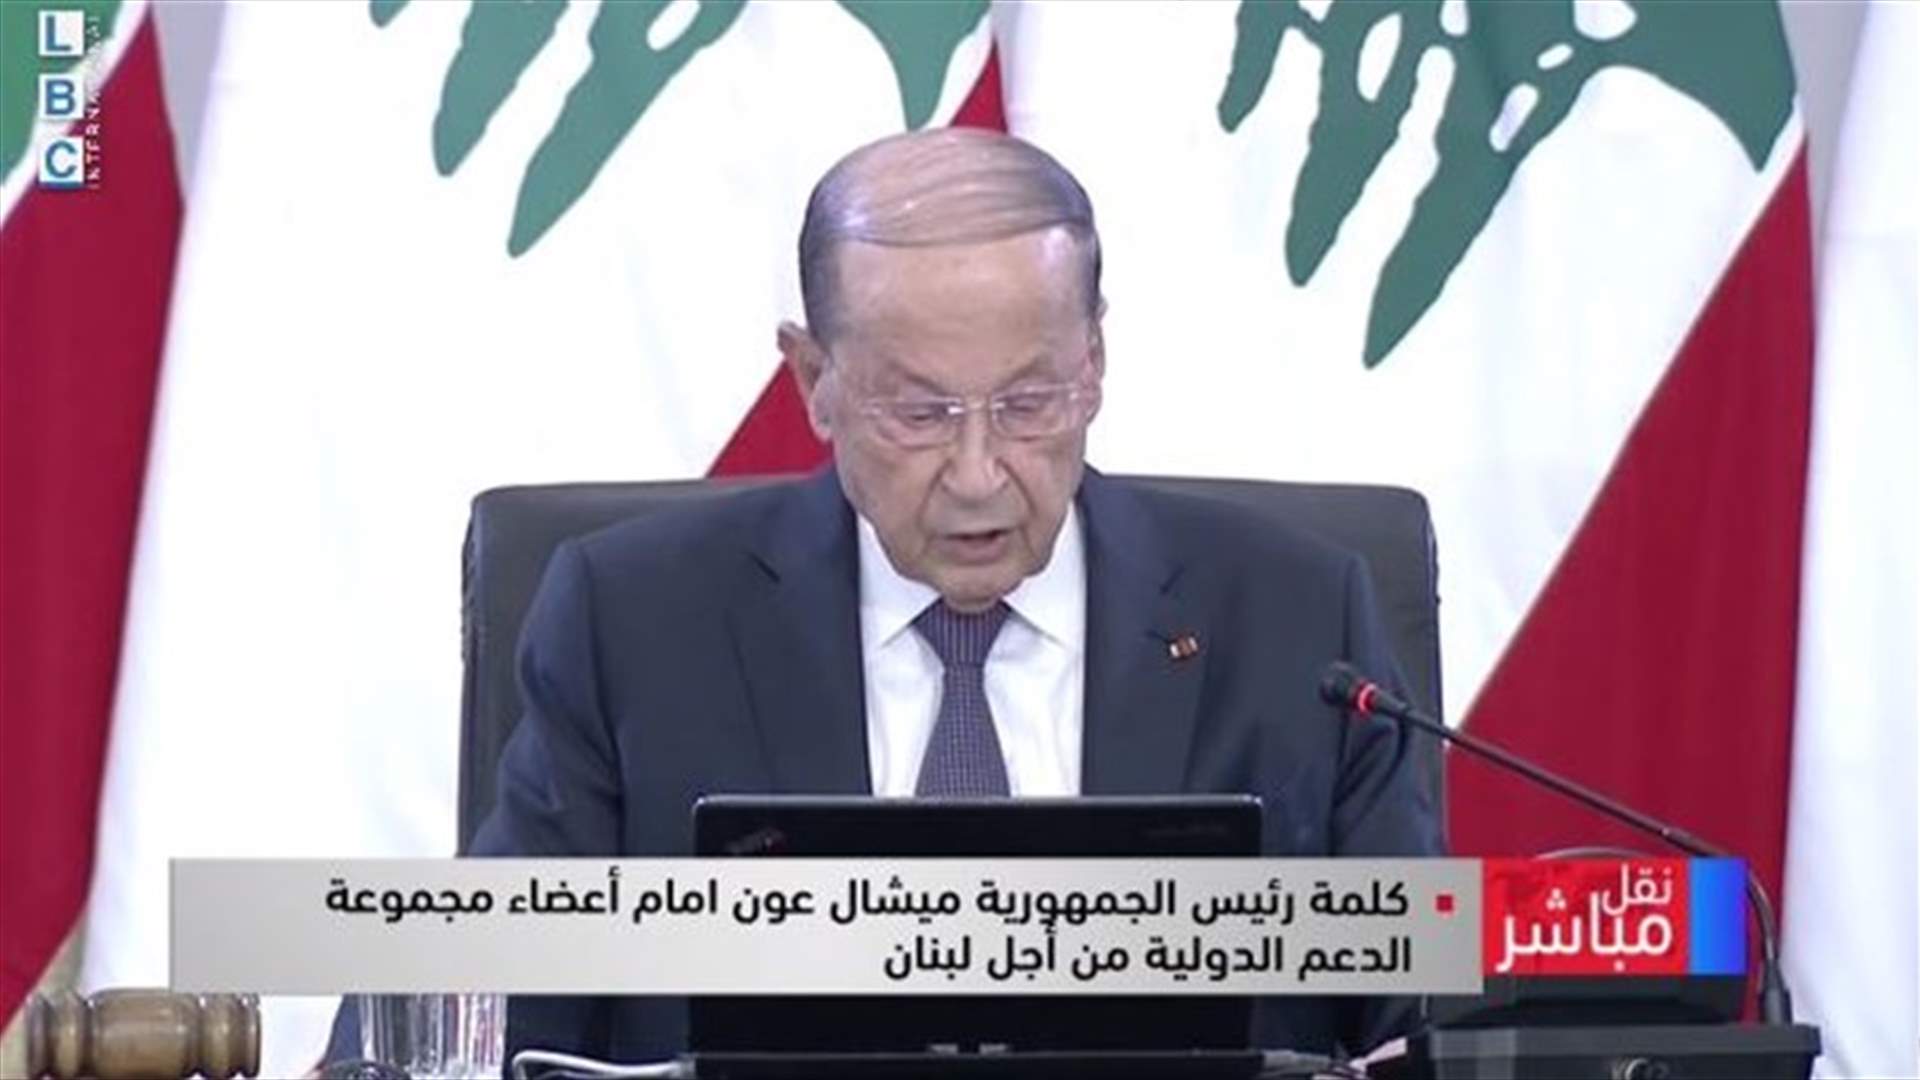 كلمة الرئيس عون في مستهل الاجتماع مع مجموعة الدعم الدولية من أجل لبنان (فيديو)